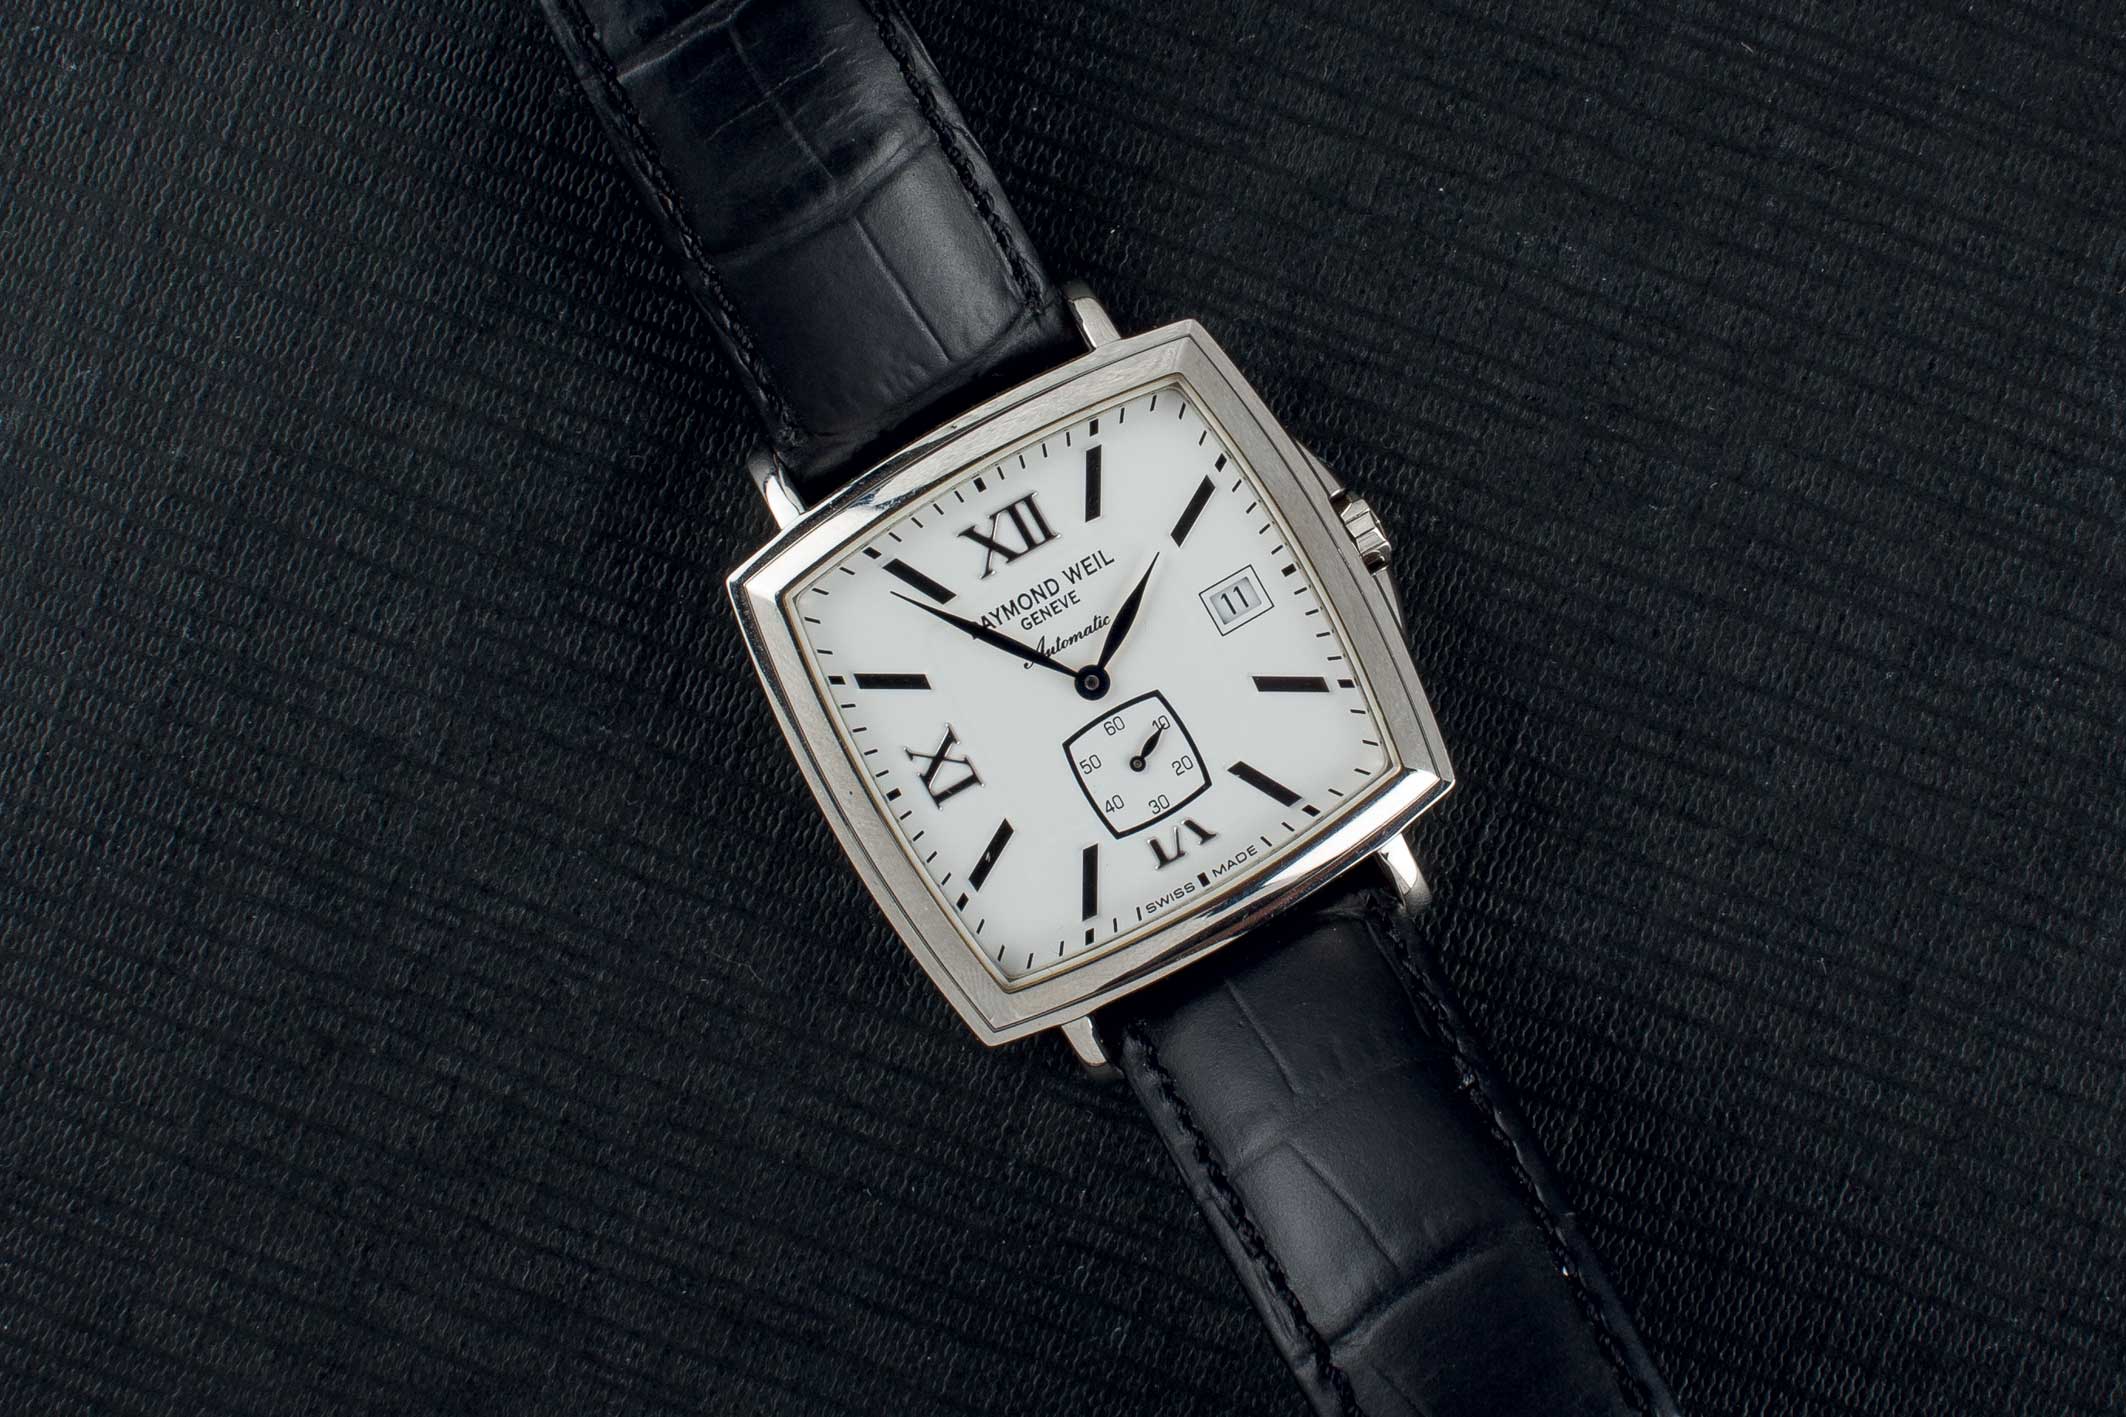 A Raymond Wei steel wrist watch. Reloj de pulsera para caballero marca RAYMOND WEIL, realizado en